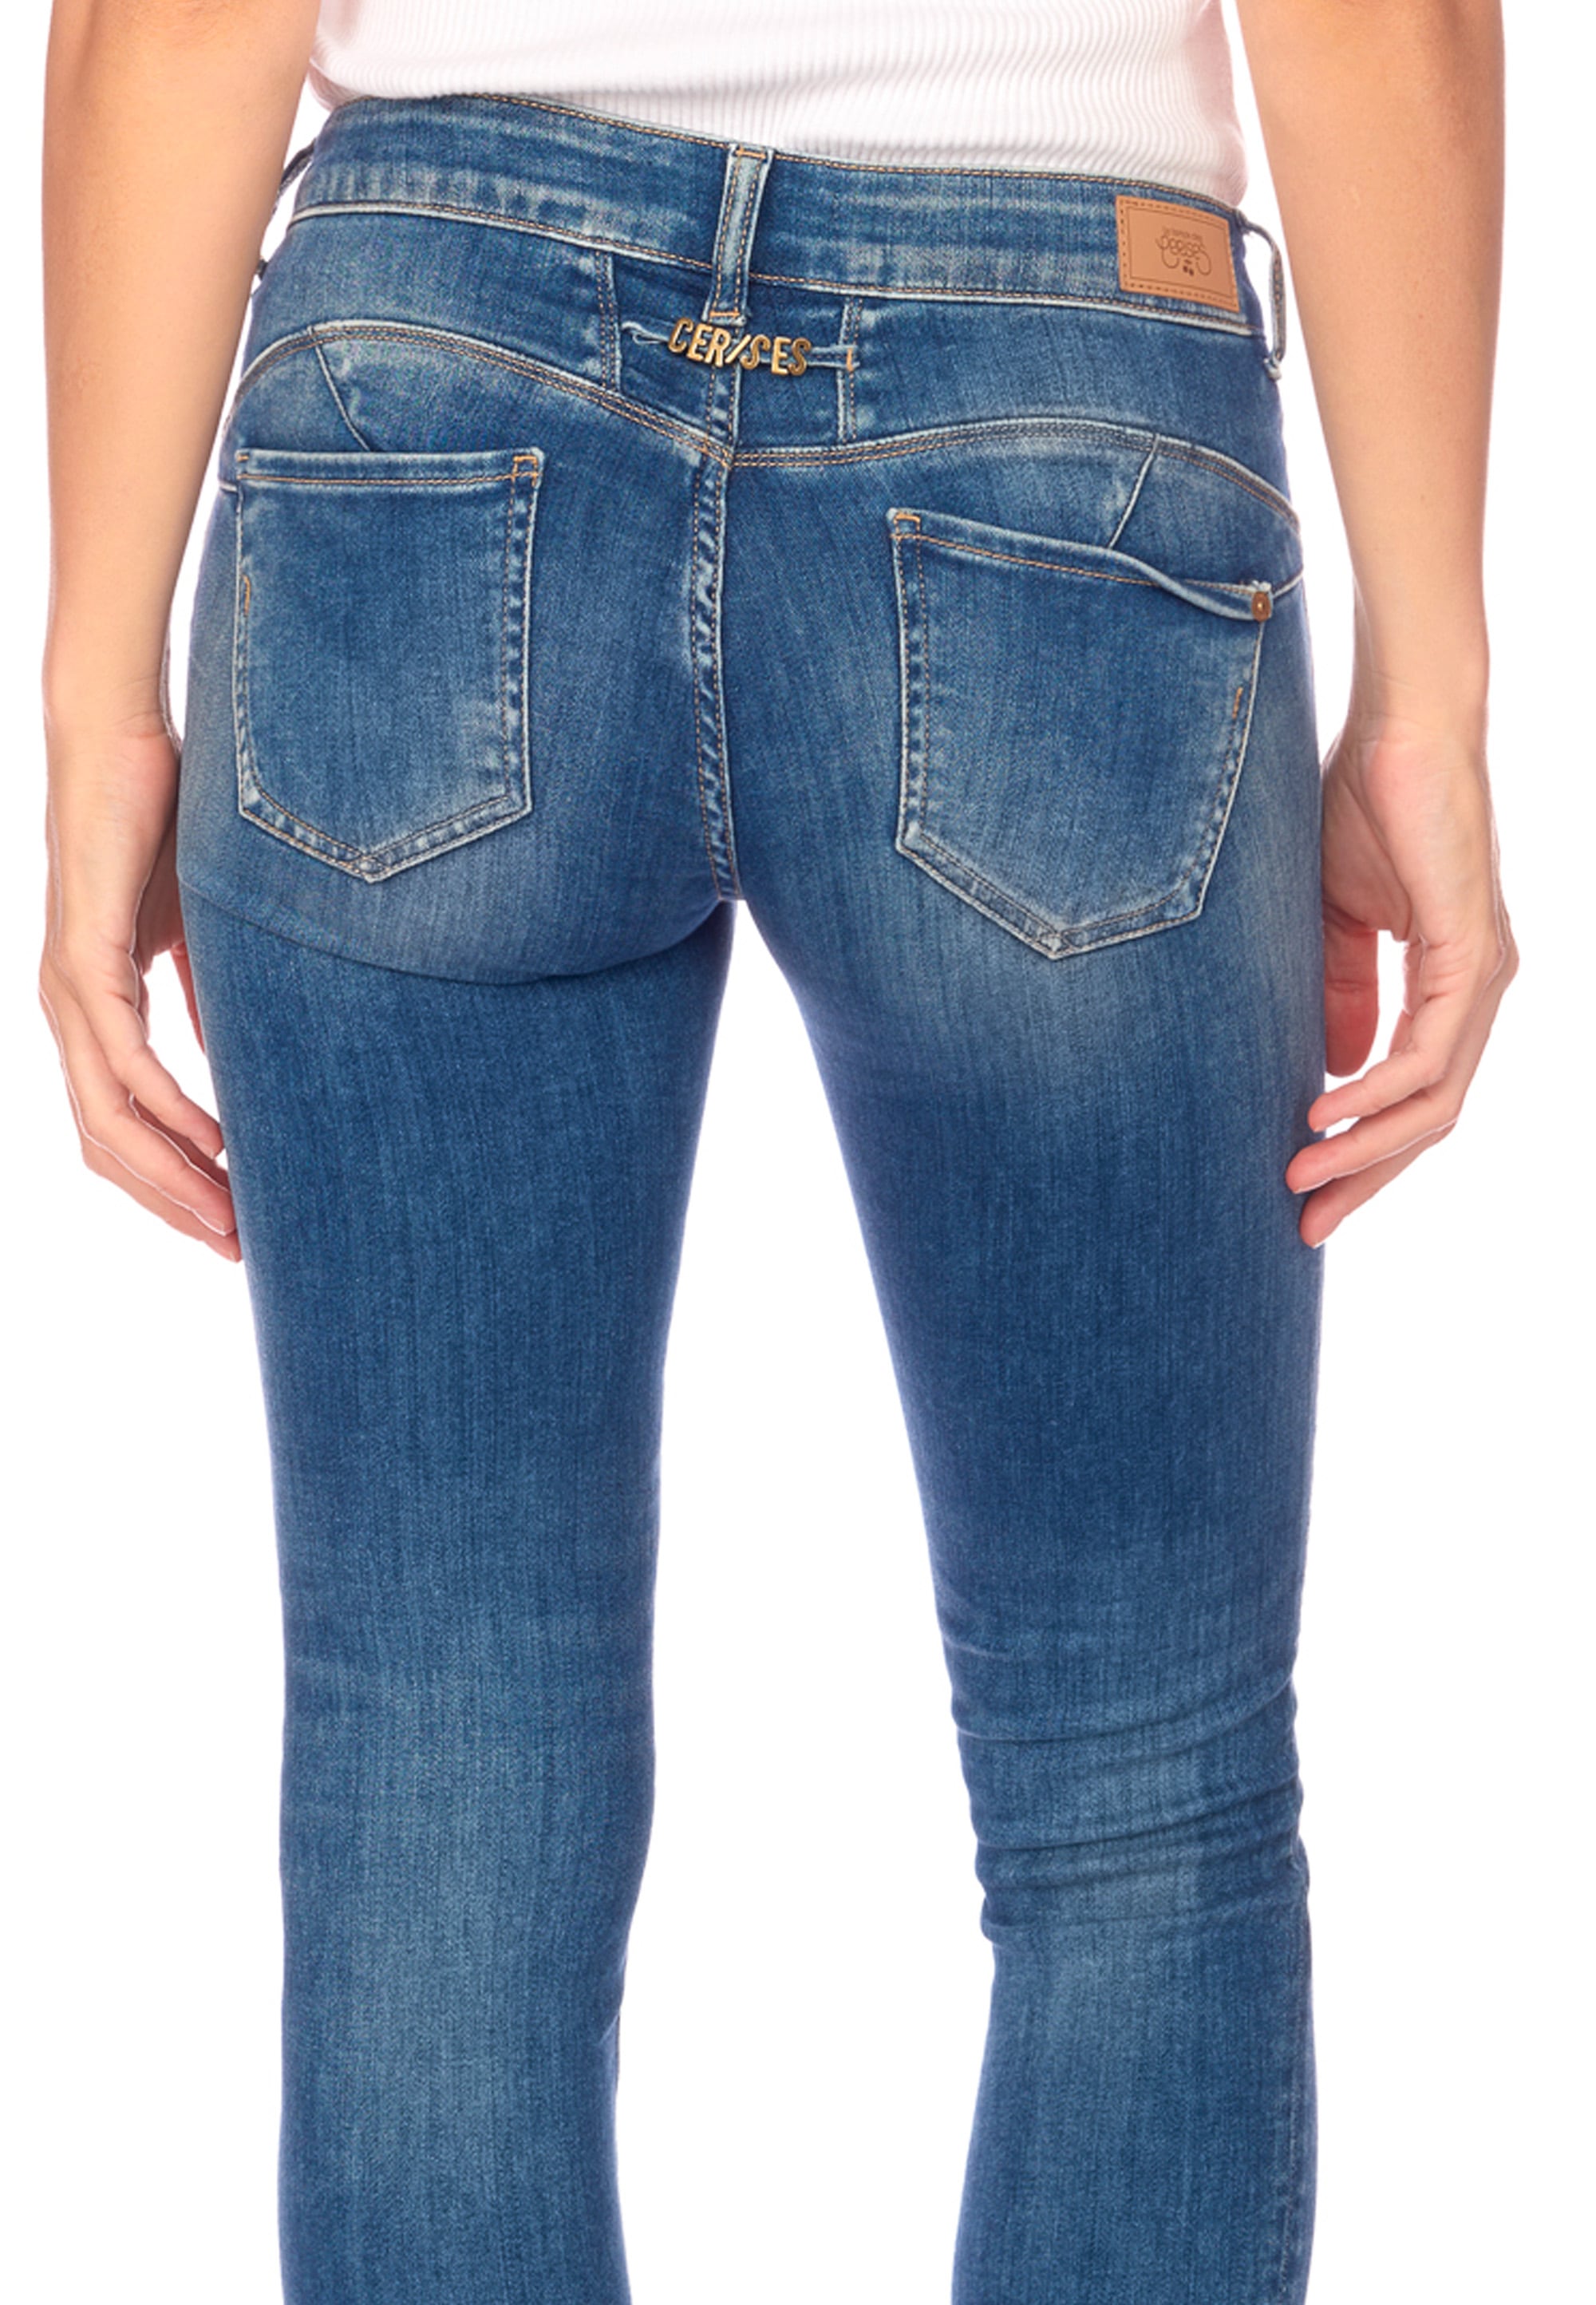 Le Temps | I\'m Des walking 5-Pocket-Design klassischen Cerises online kaufen Jeans, Bequeme im